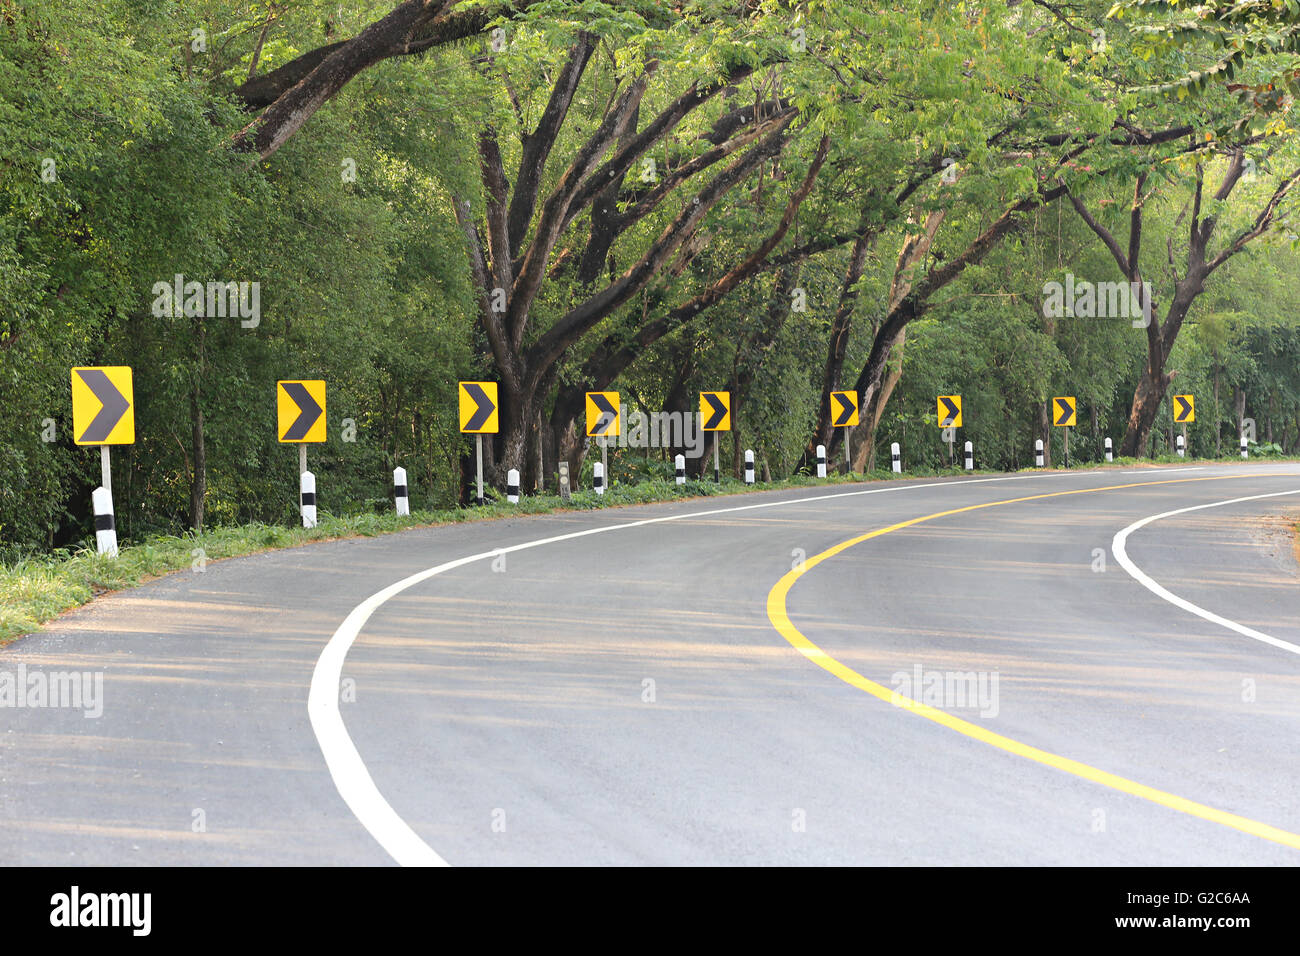 La strada curva con via segni di luce reflex,a notte si possono vedere i segni più chiaramente. Foto Stock